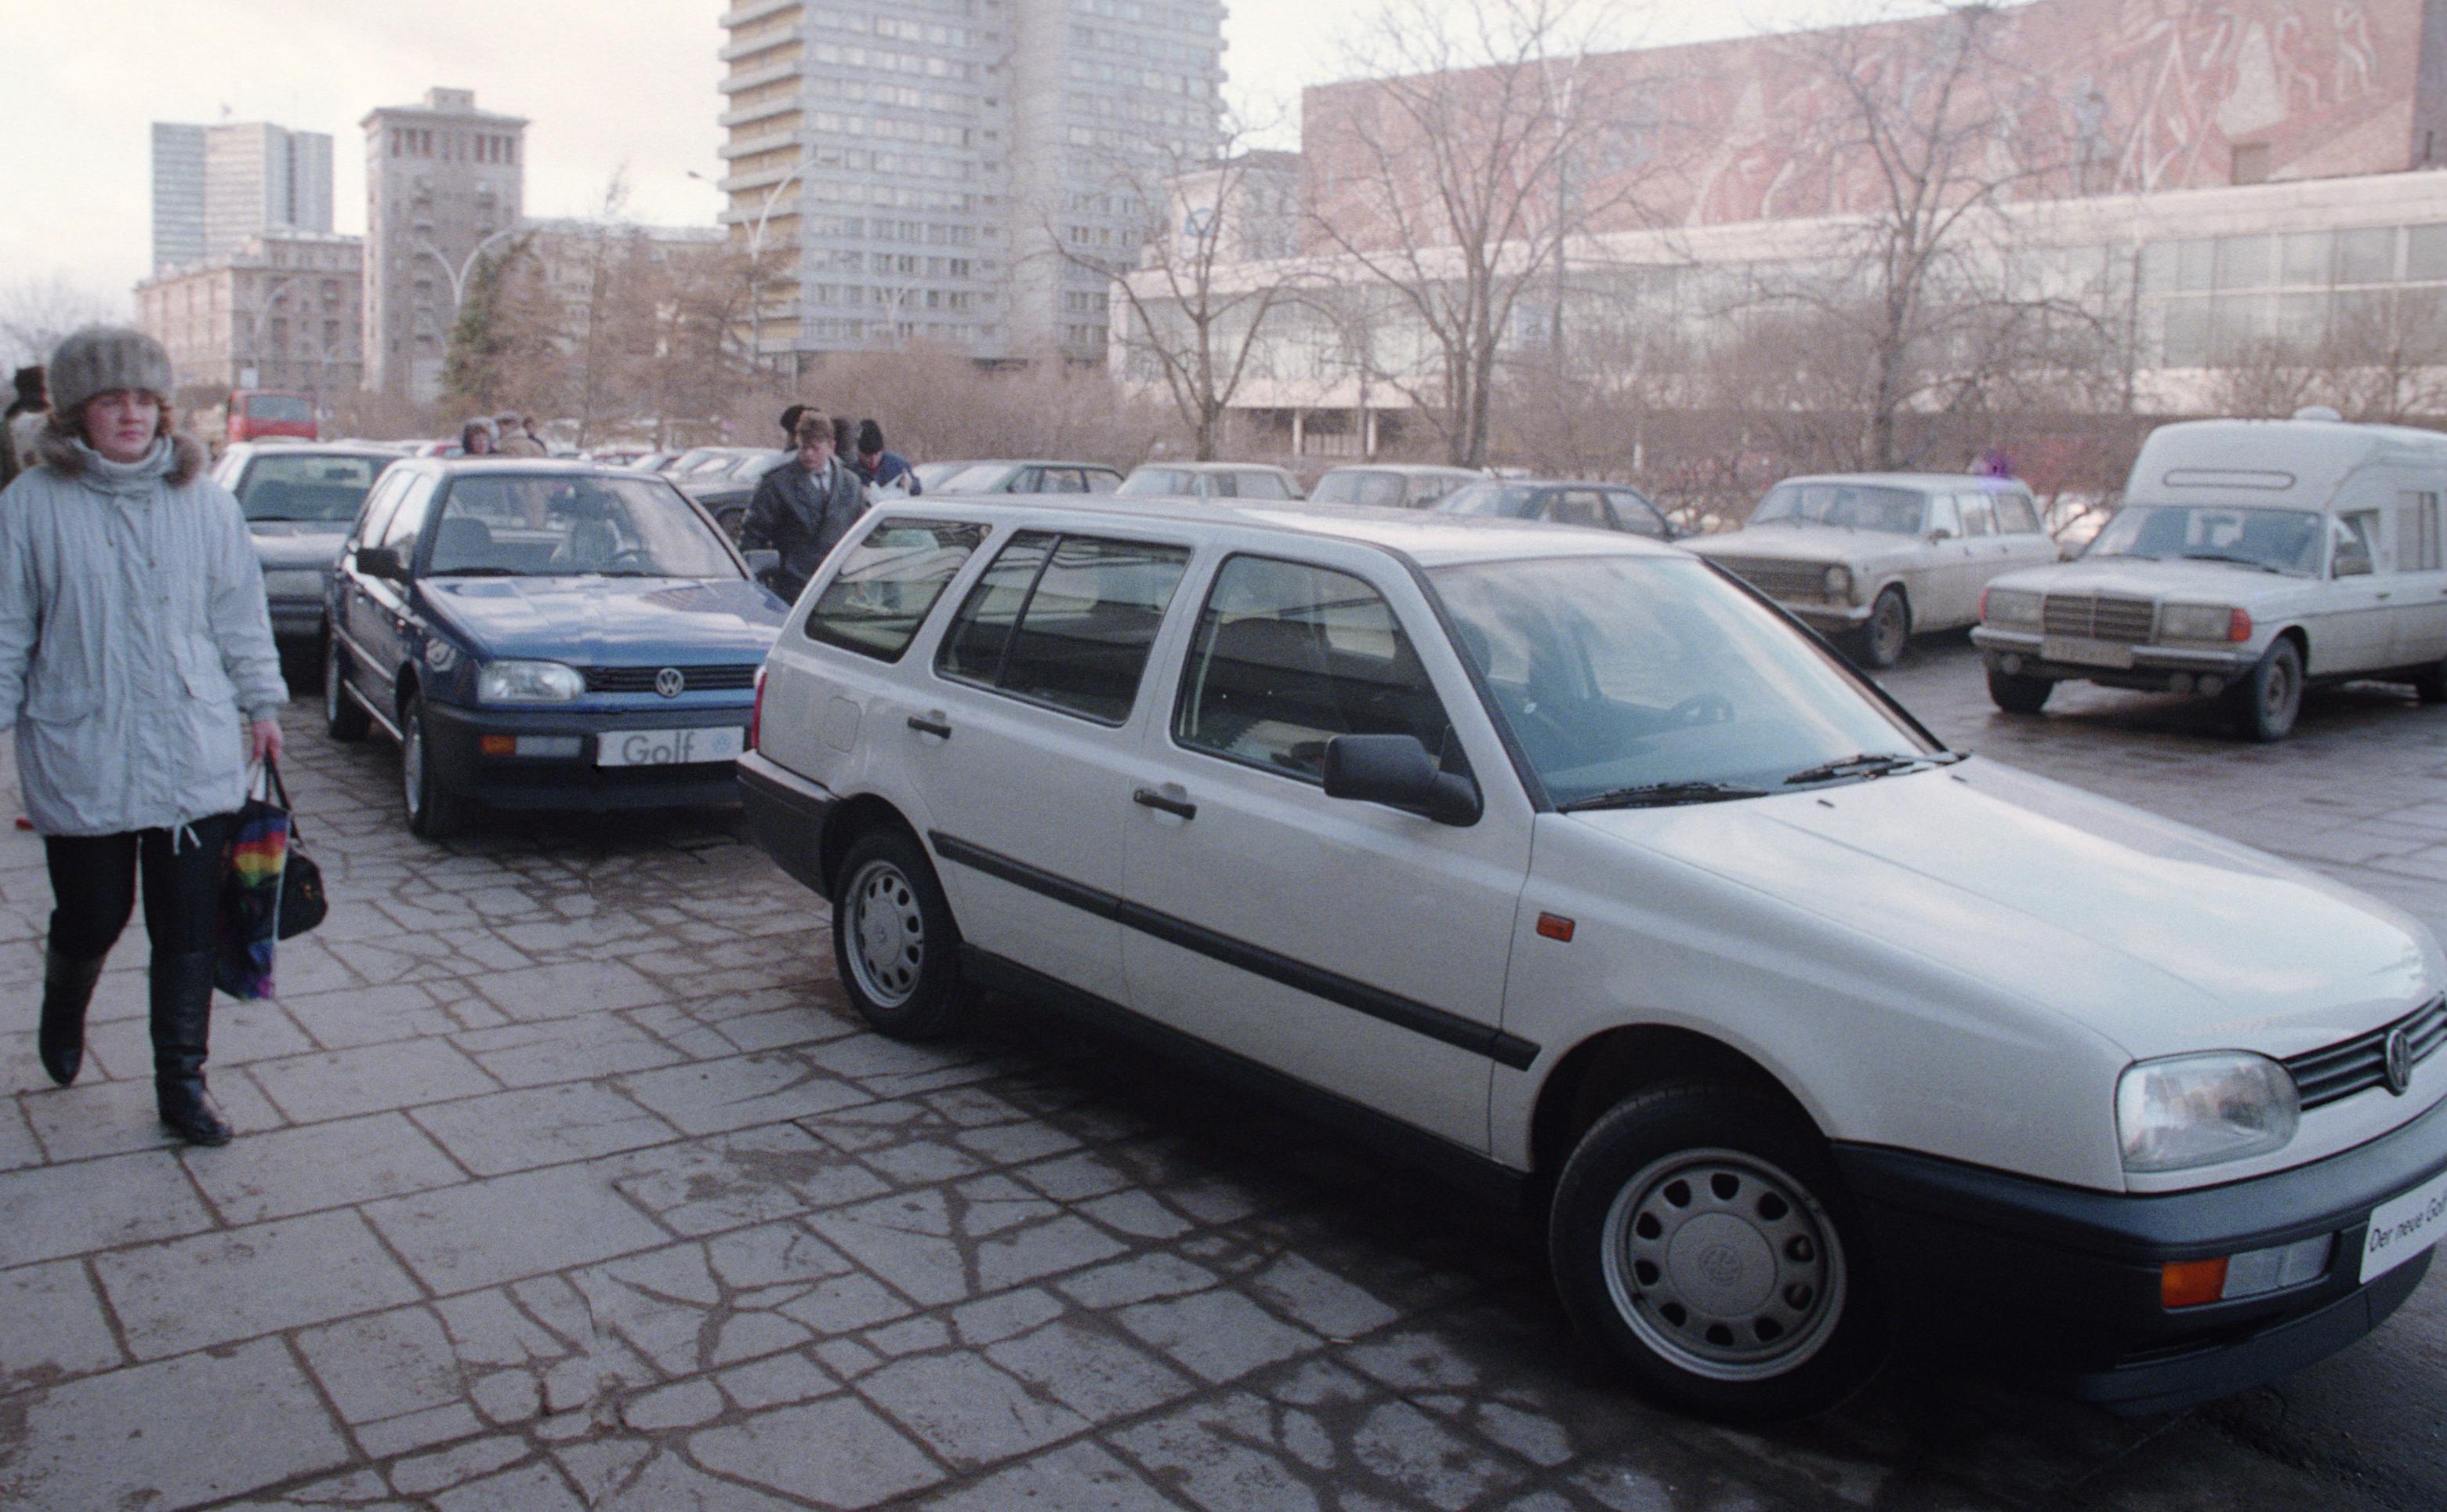 Новый&nbsp;Volkswagen в хорошей комплектации в 1990-е годы стоил не менее $15 тыс. За такие деньги можно было приобрести однокомнатную квартиру в спальном районе Москвы&nbsp;